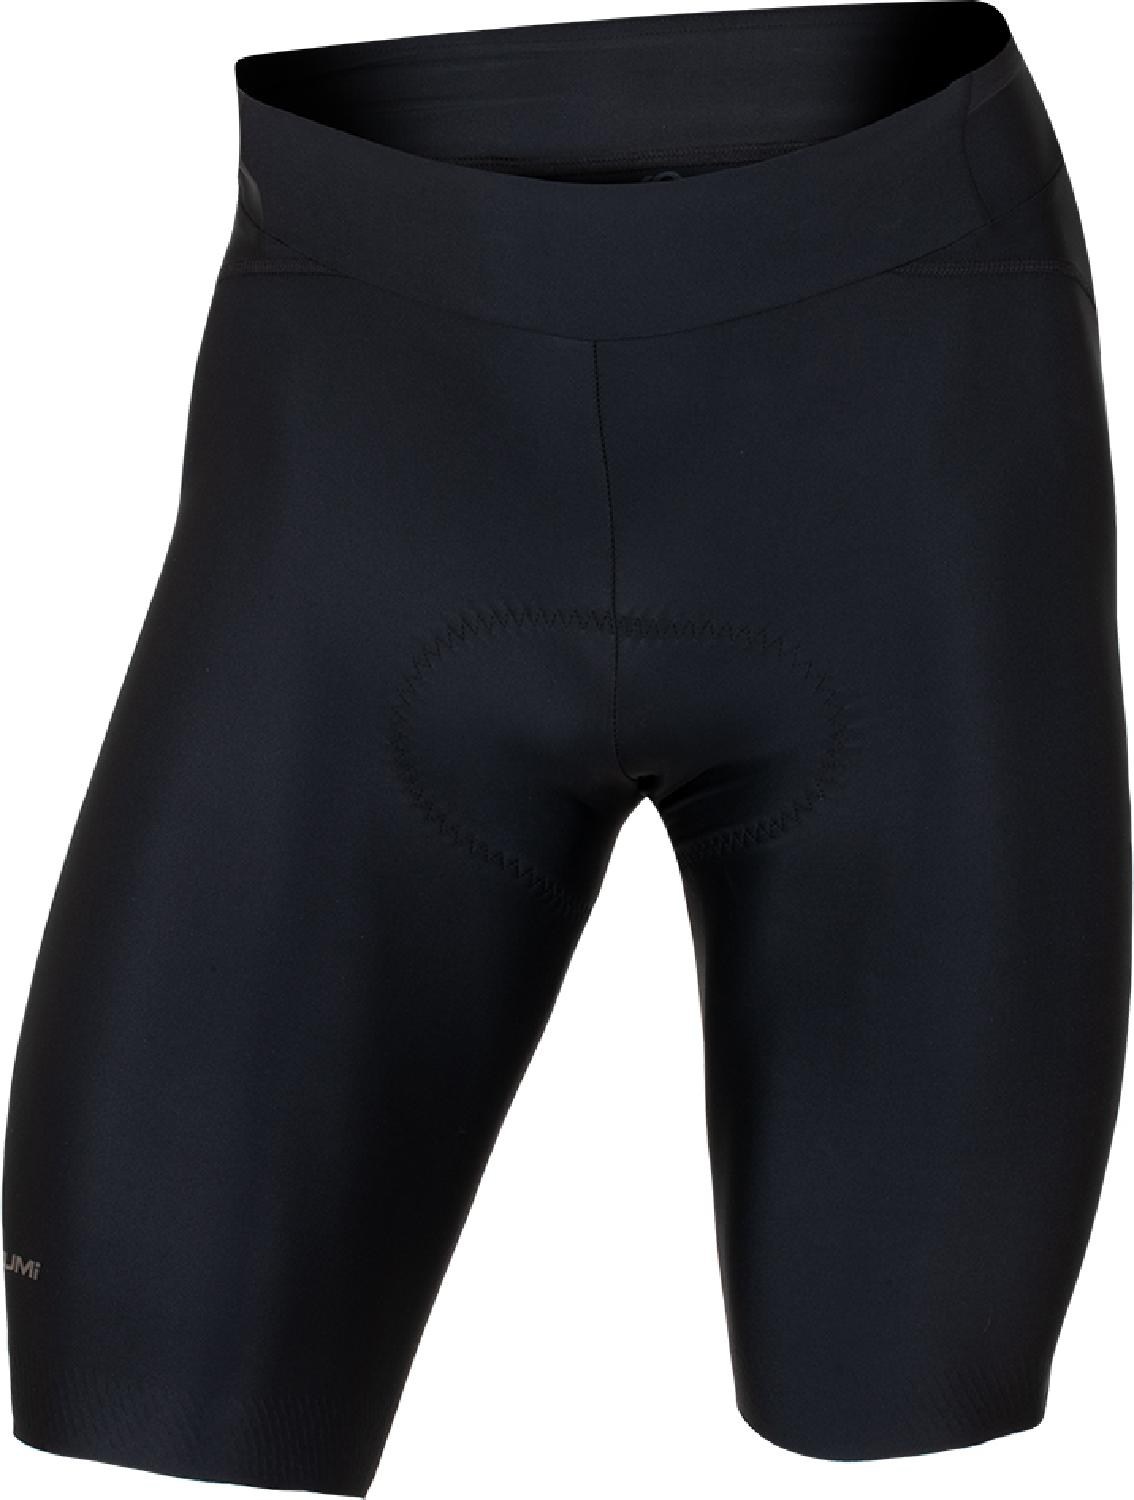 Велосипедные шорты Attack Air — мужские PEARL iZUMi, черный rove шорты мужские pearl izumi цвет smoke grey